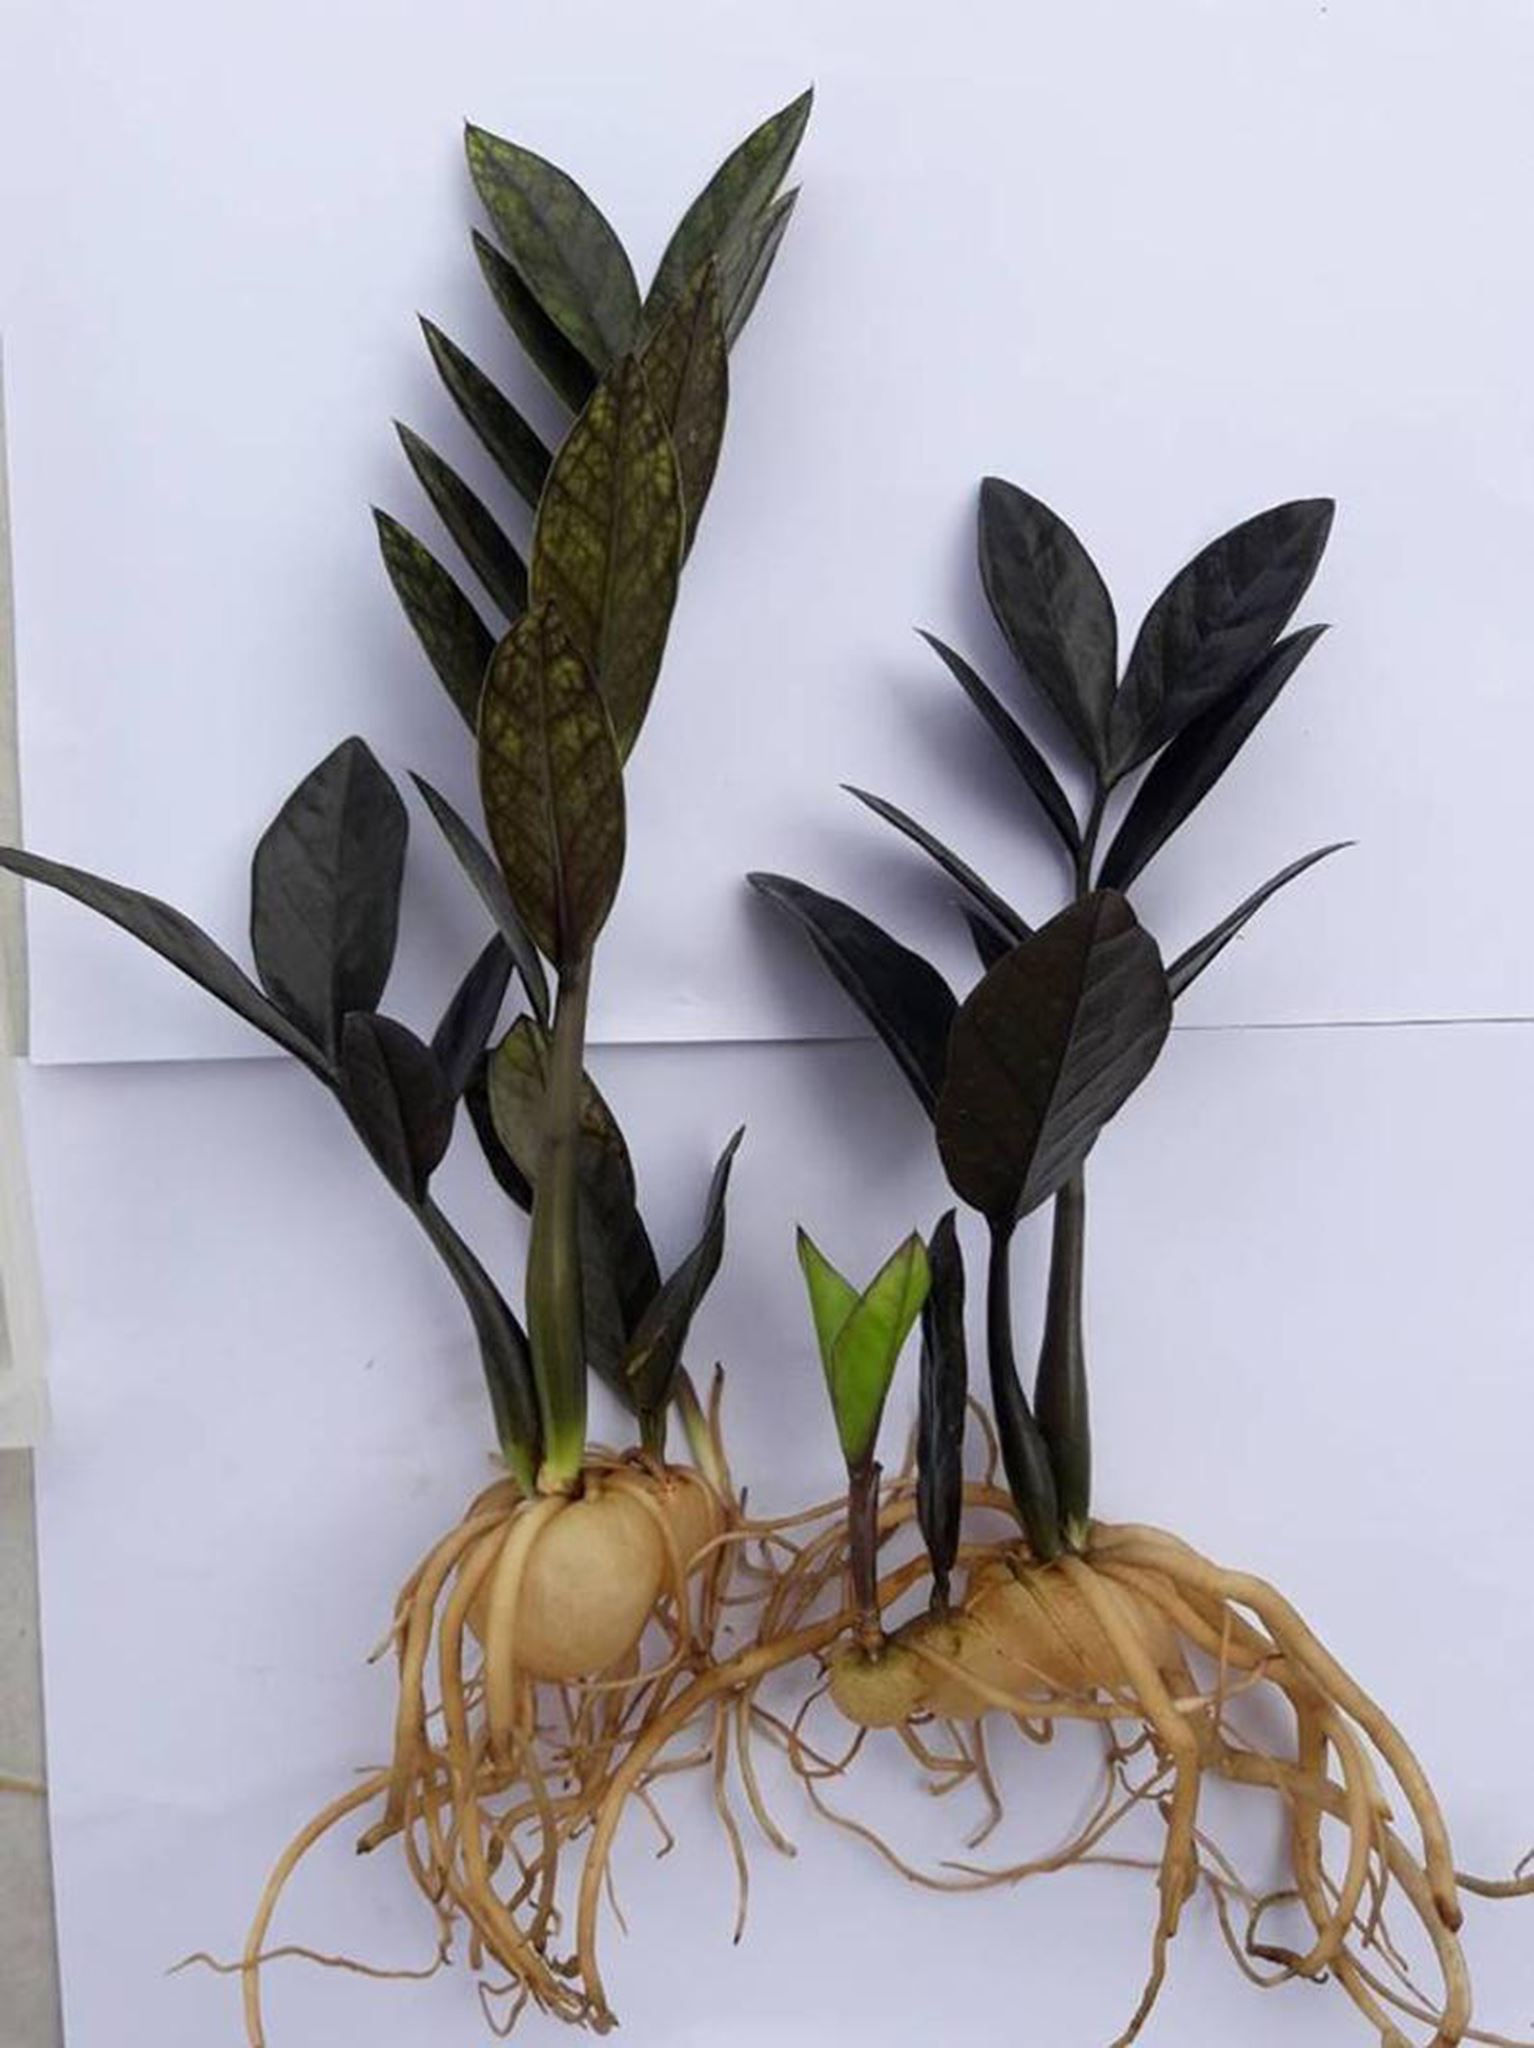 Zamioculcas zamiifolia black